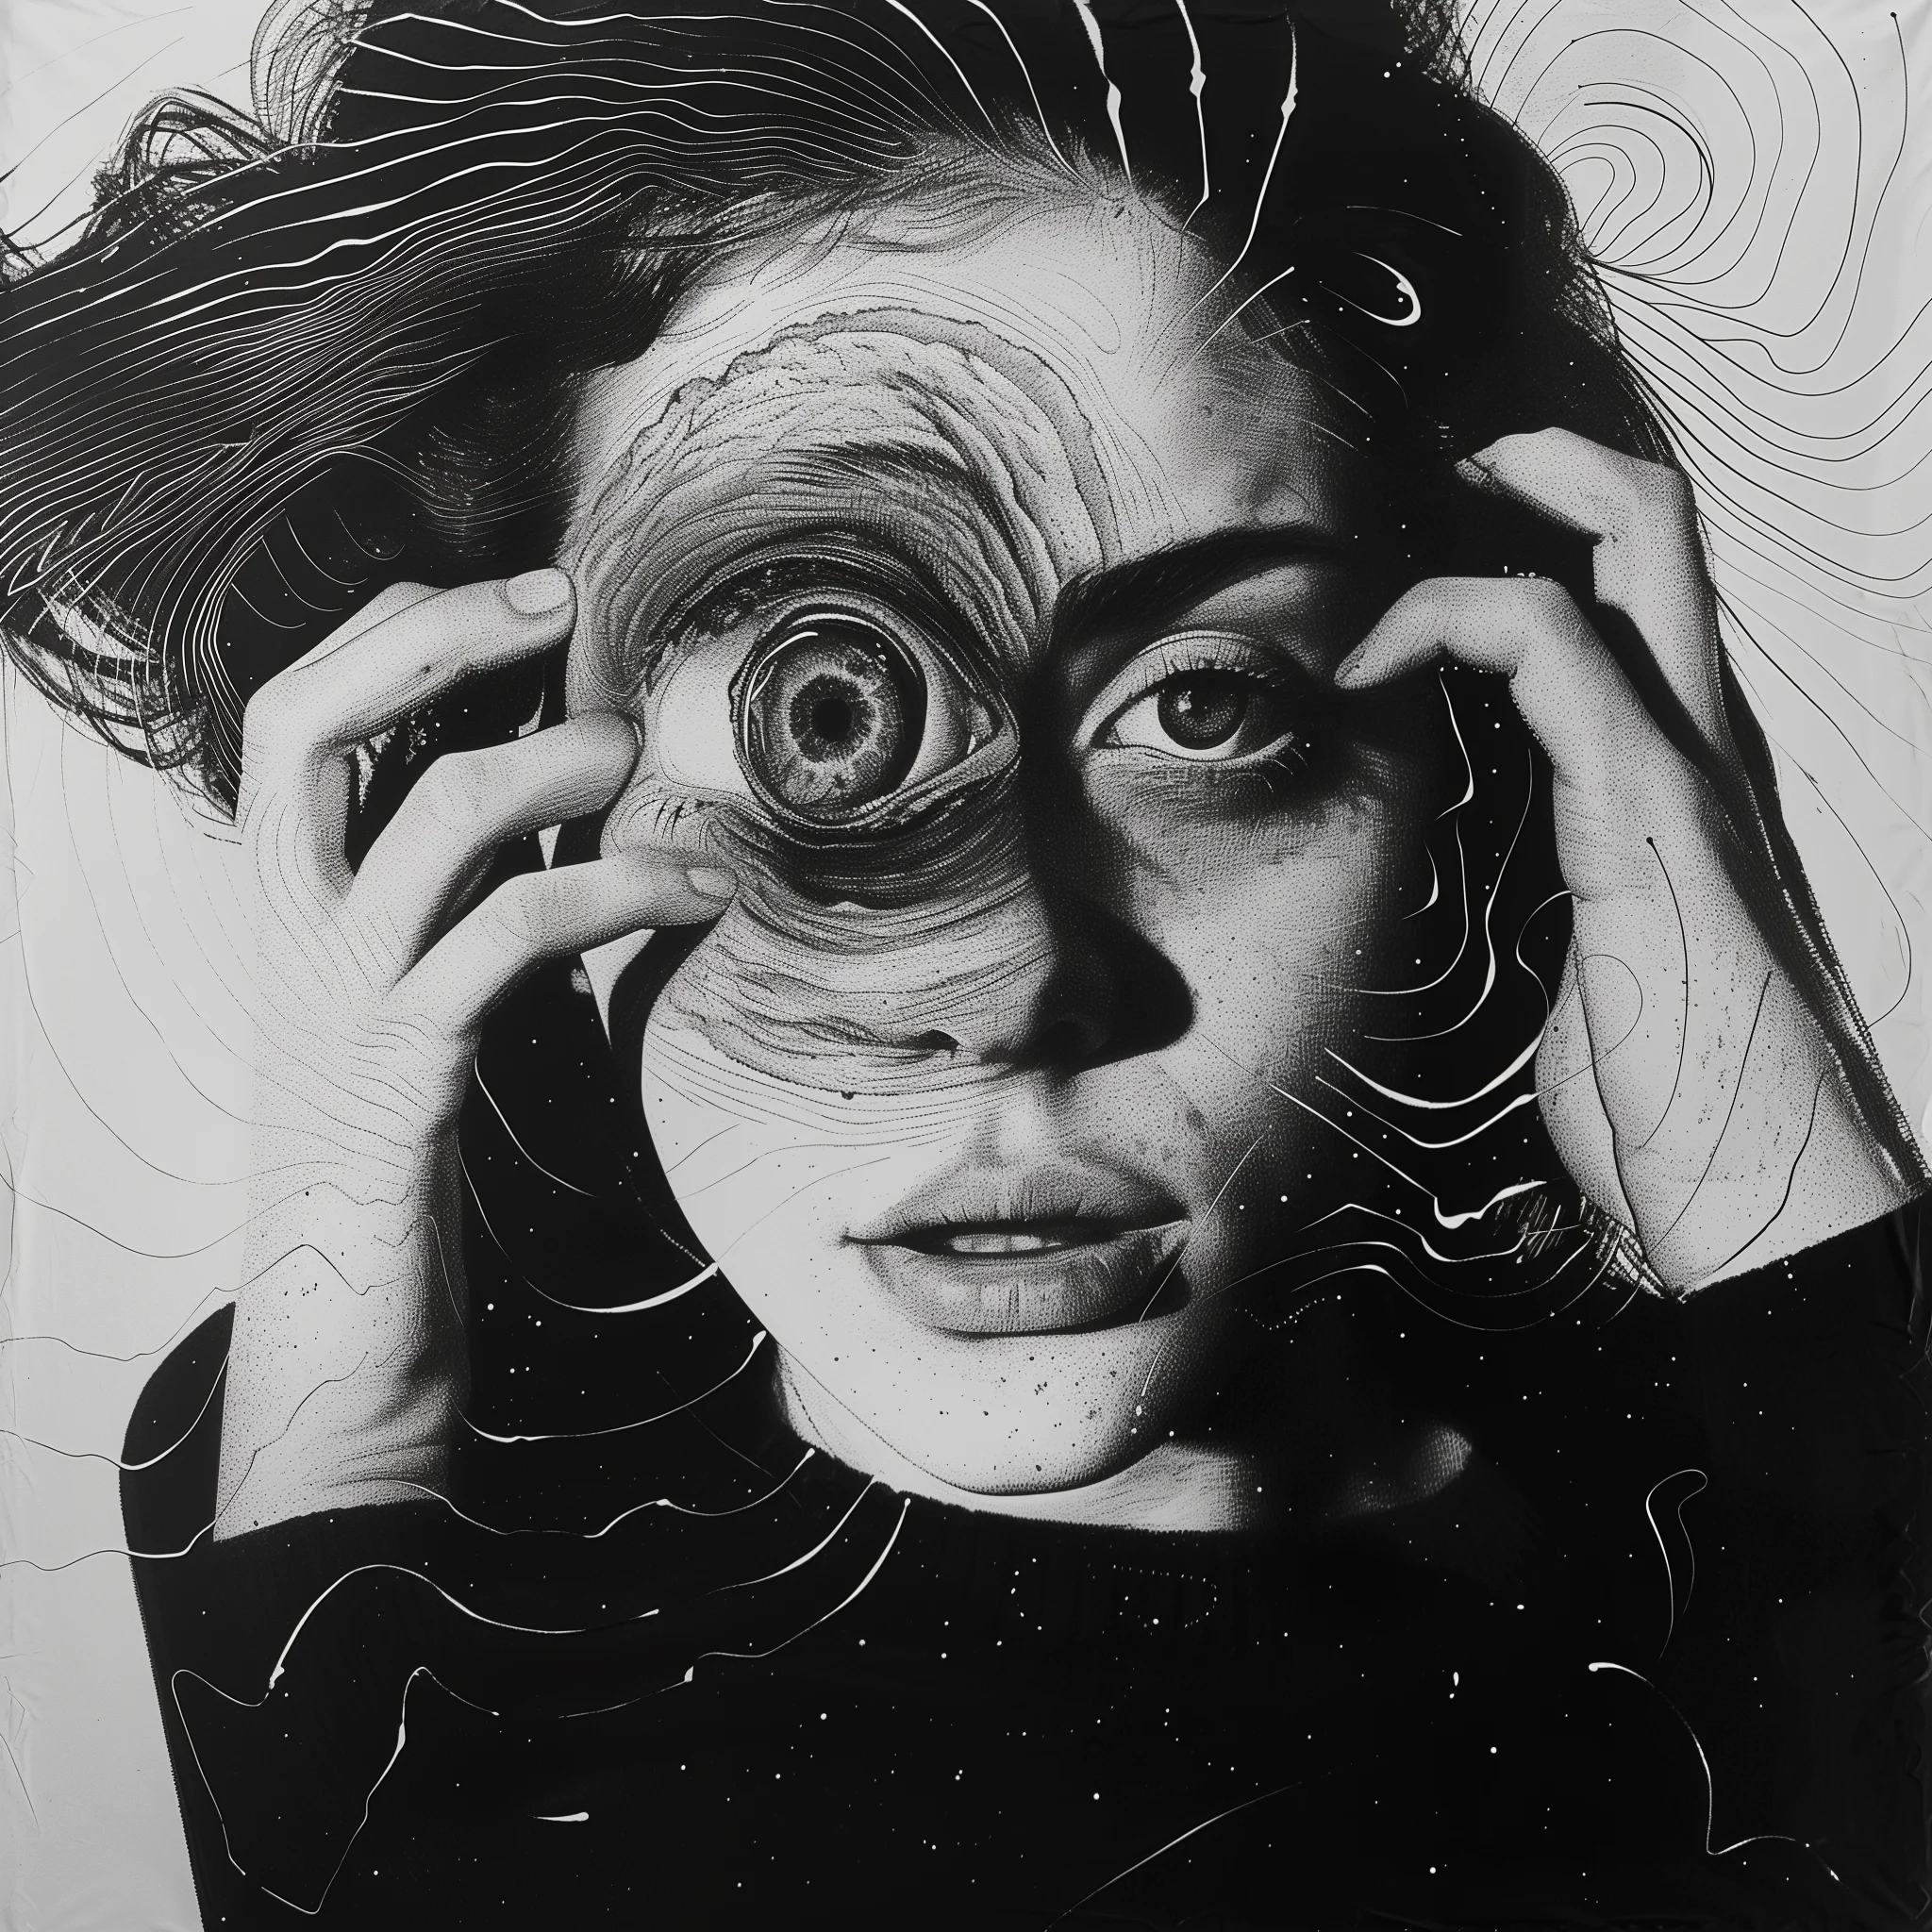 Représentation artistique d'une jeune femme au regard hypnotique